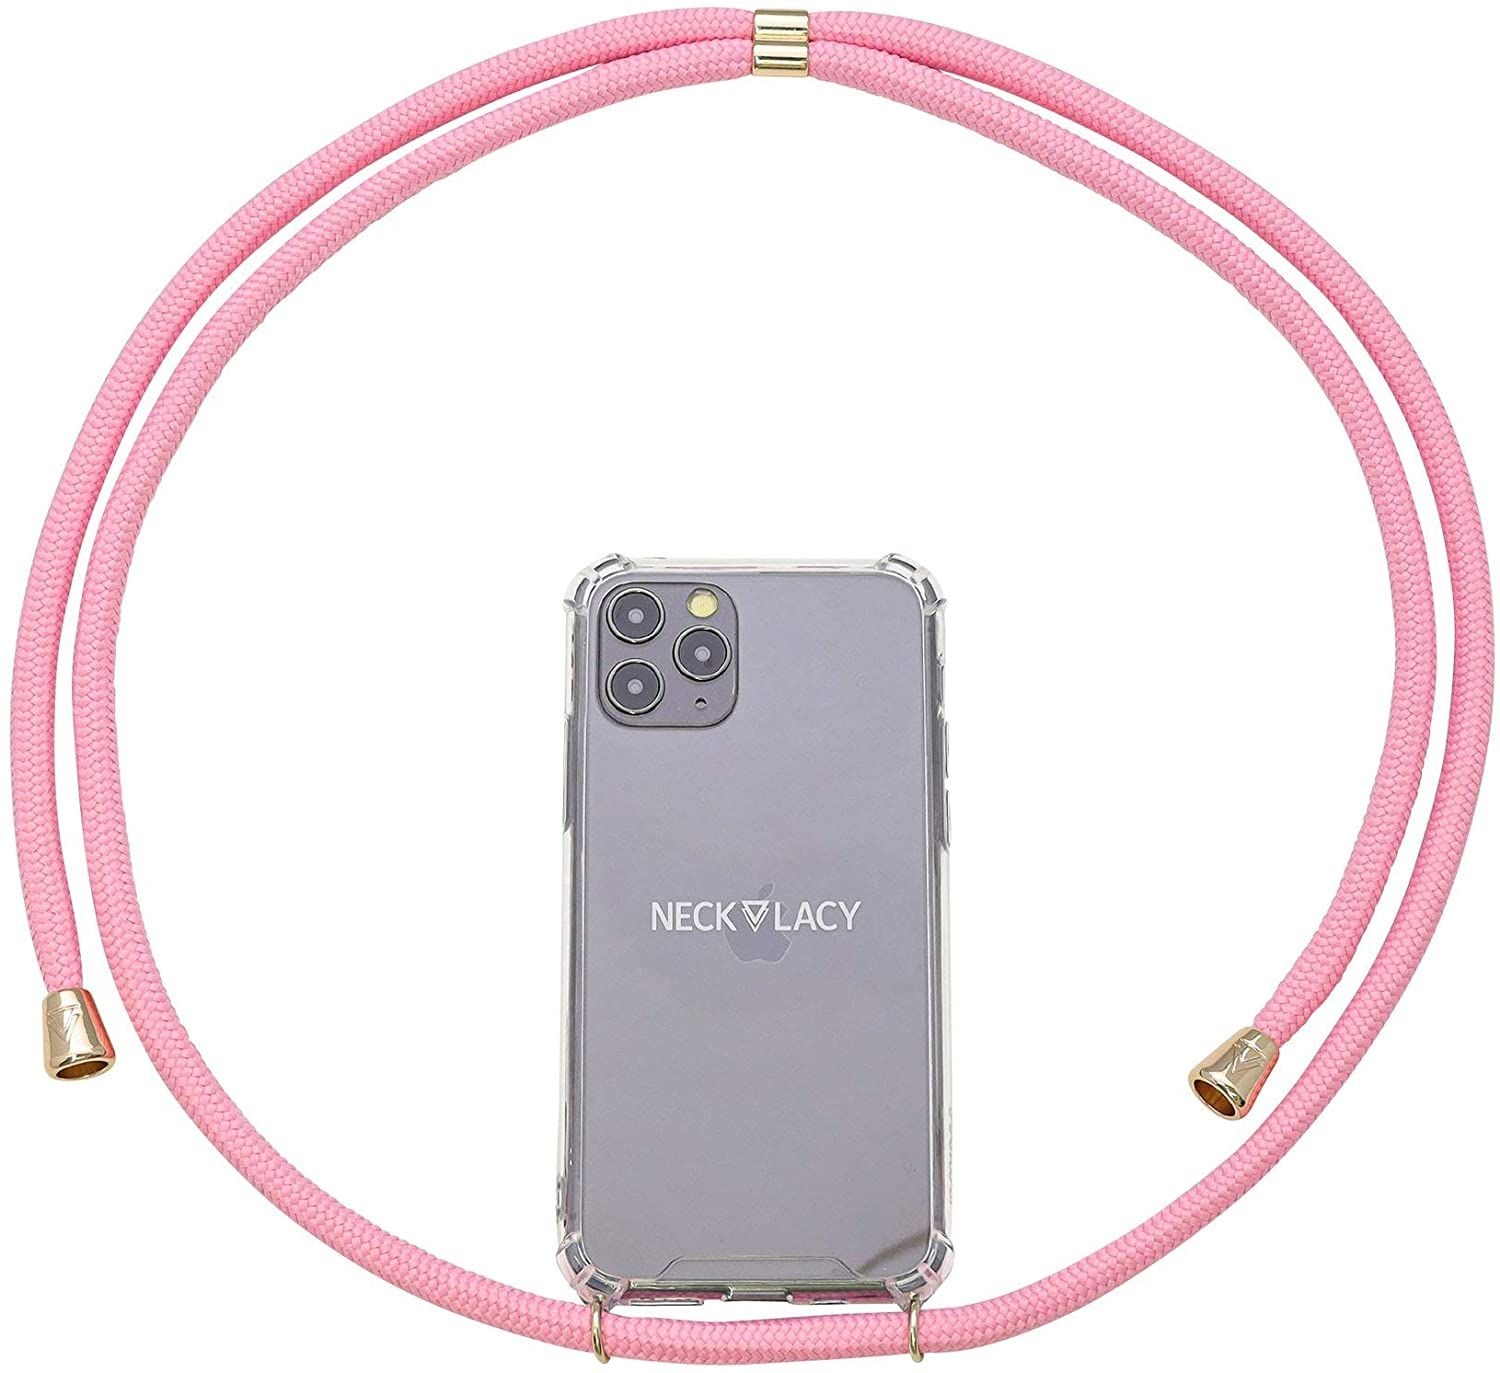 NECKLACY Handykette Handyhülle zum umhängen - für iPhone X/XS - Case / Handyhülle mit Band zum umhängen - Trageband Hals mit Kordel - Smartphone Necklace, Cotton Candy